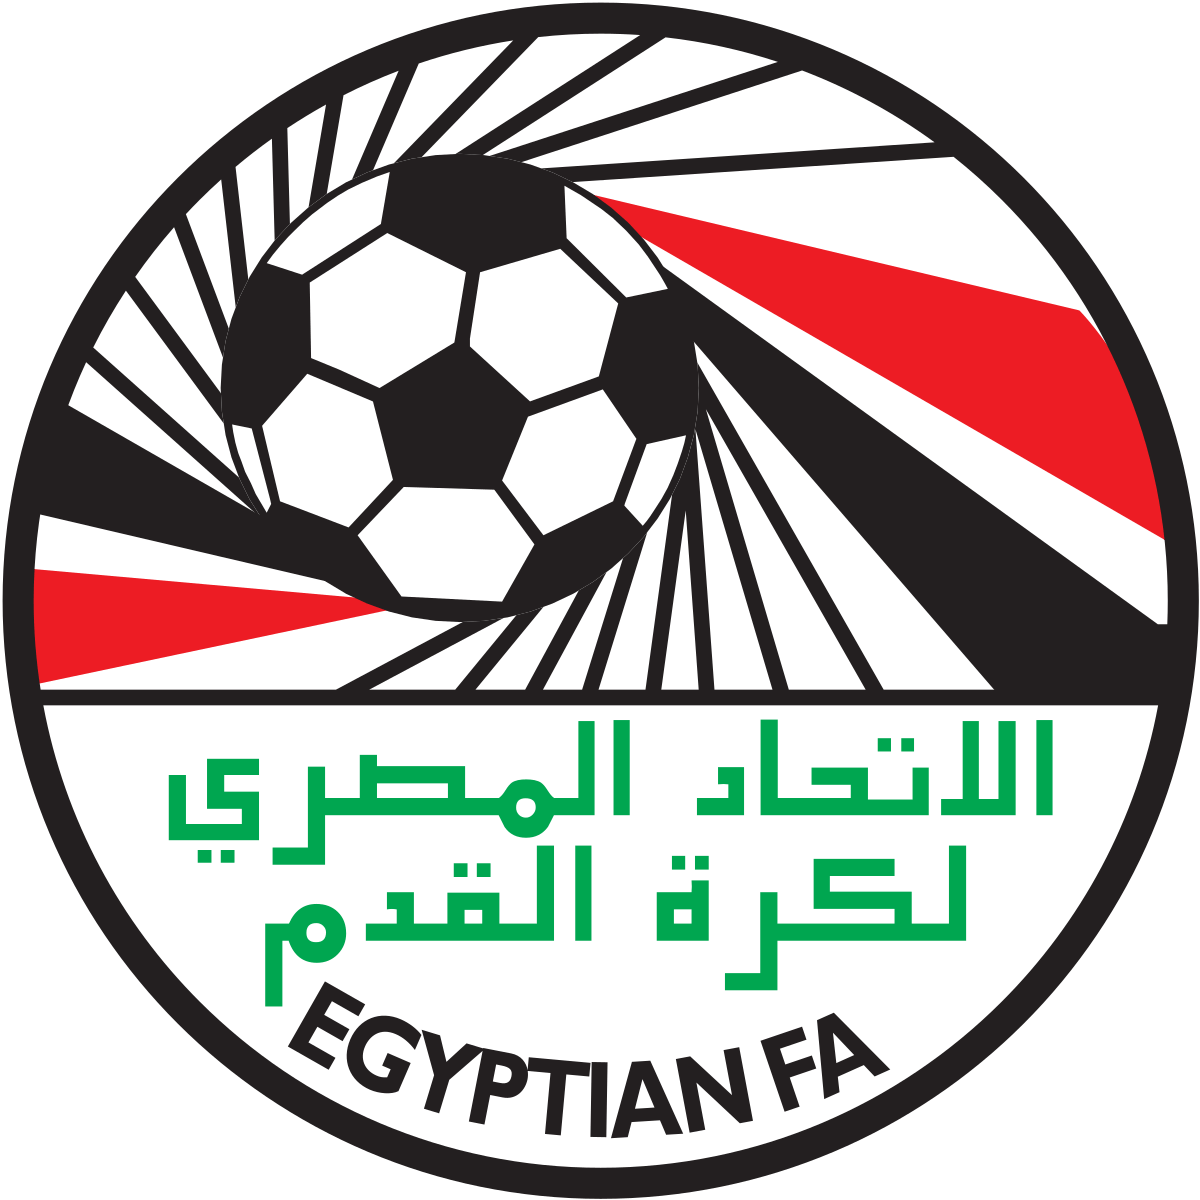 Egypt Logo - Egypt national football team